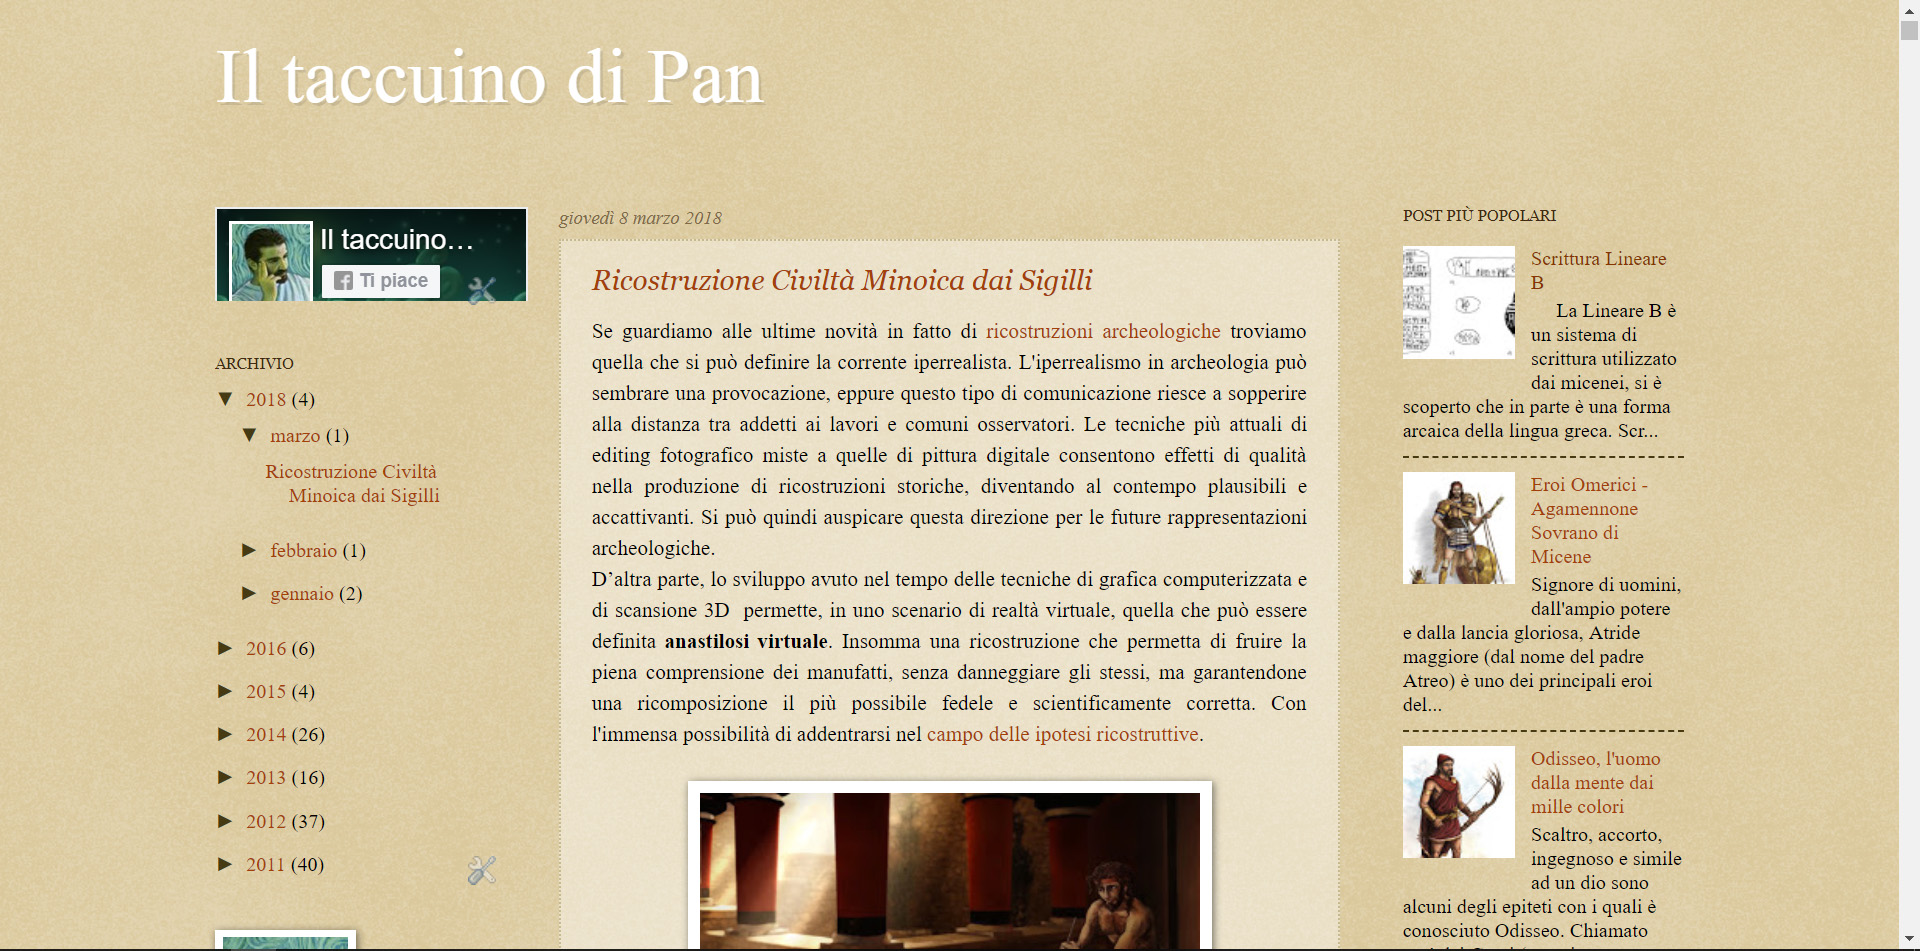 Blog personale, taccuino di Pan, Panaiotis Kruklidis, illustratore, architetto, portfolio, grafica, ricostruzioni